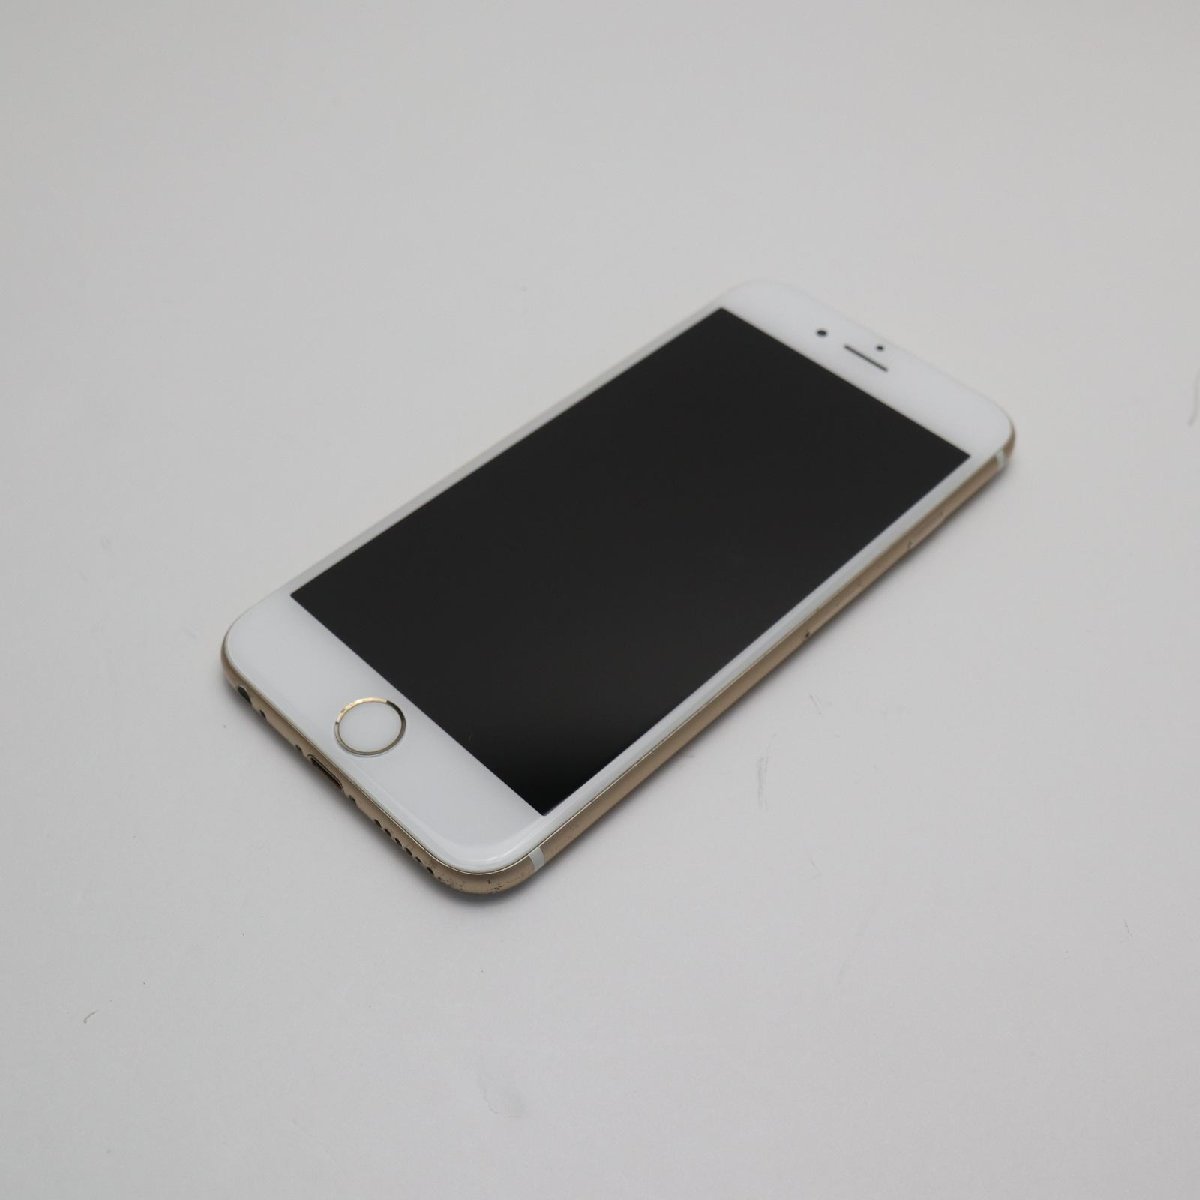 定期入れの Apple スマホ 即日発送 ゴールド 64GB iPhone6S SIMフリー